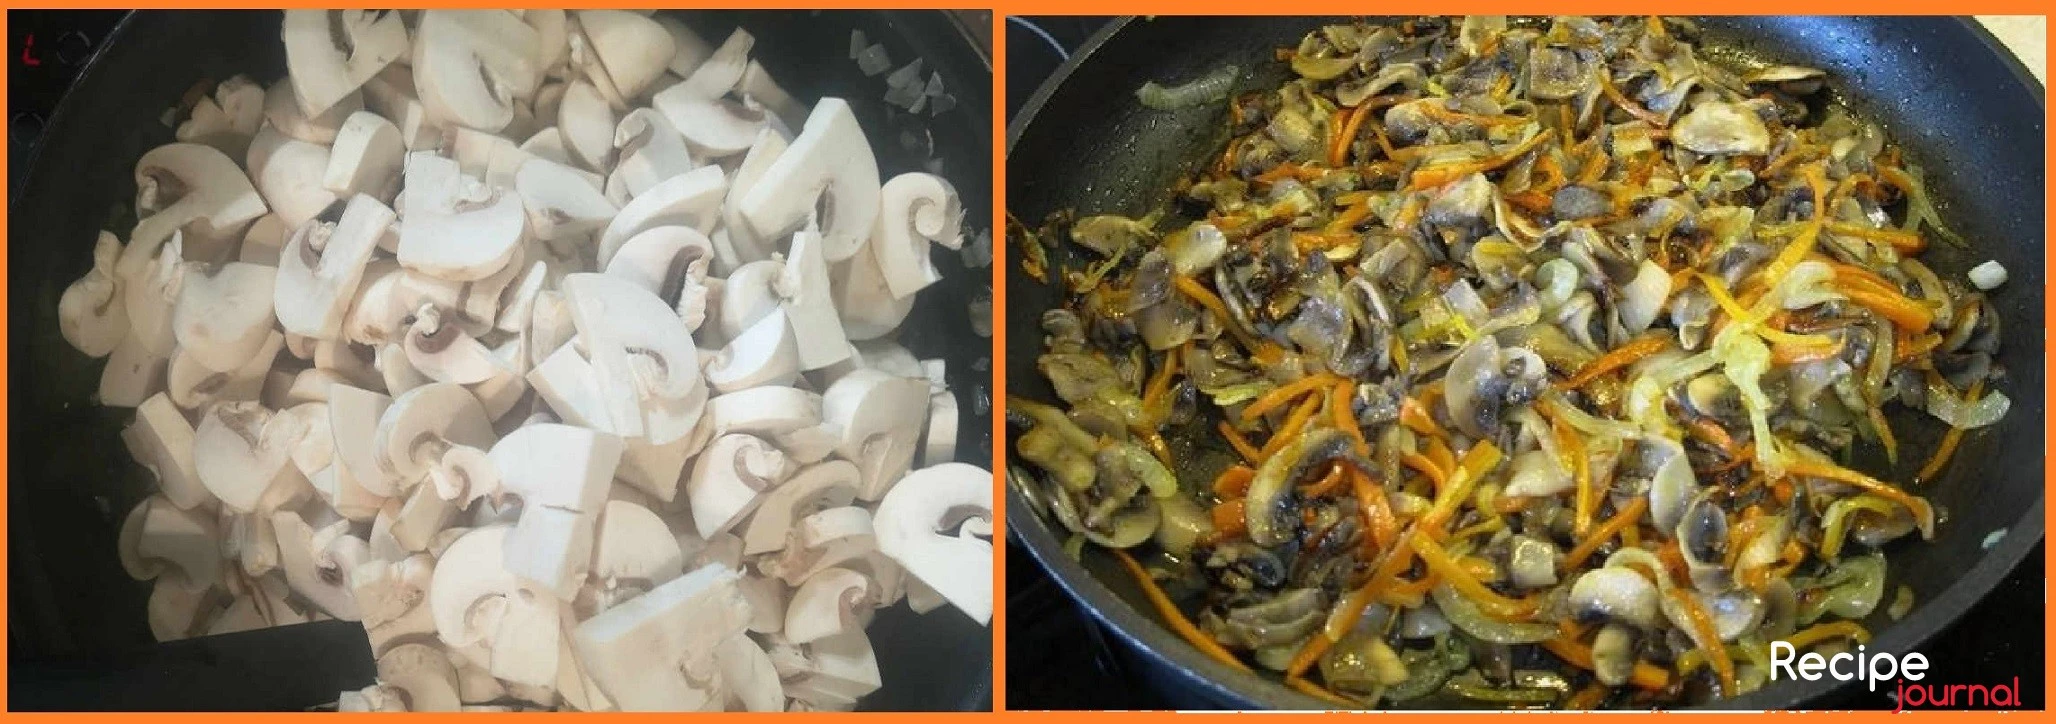 Моем шампиньоны, режем пластинами и добавляем на сковороду к овощам. Обжариваем до готовности грибов.